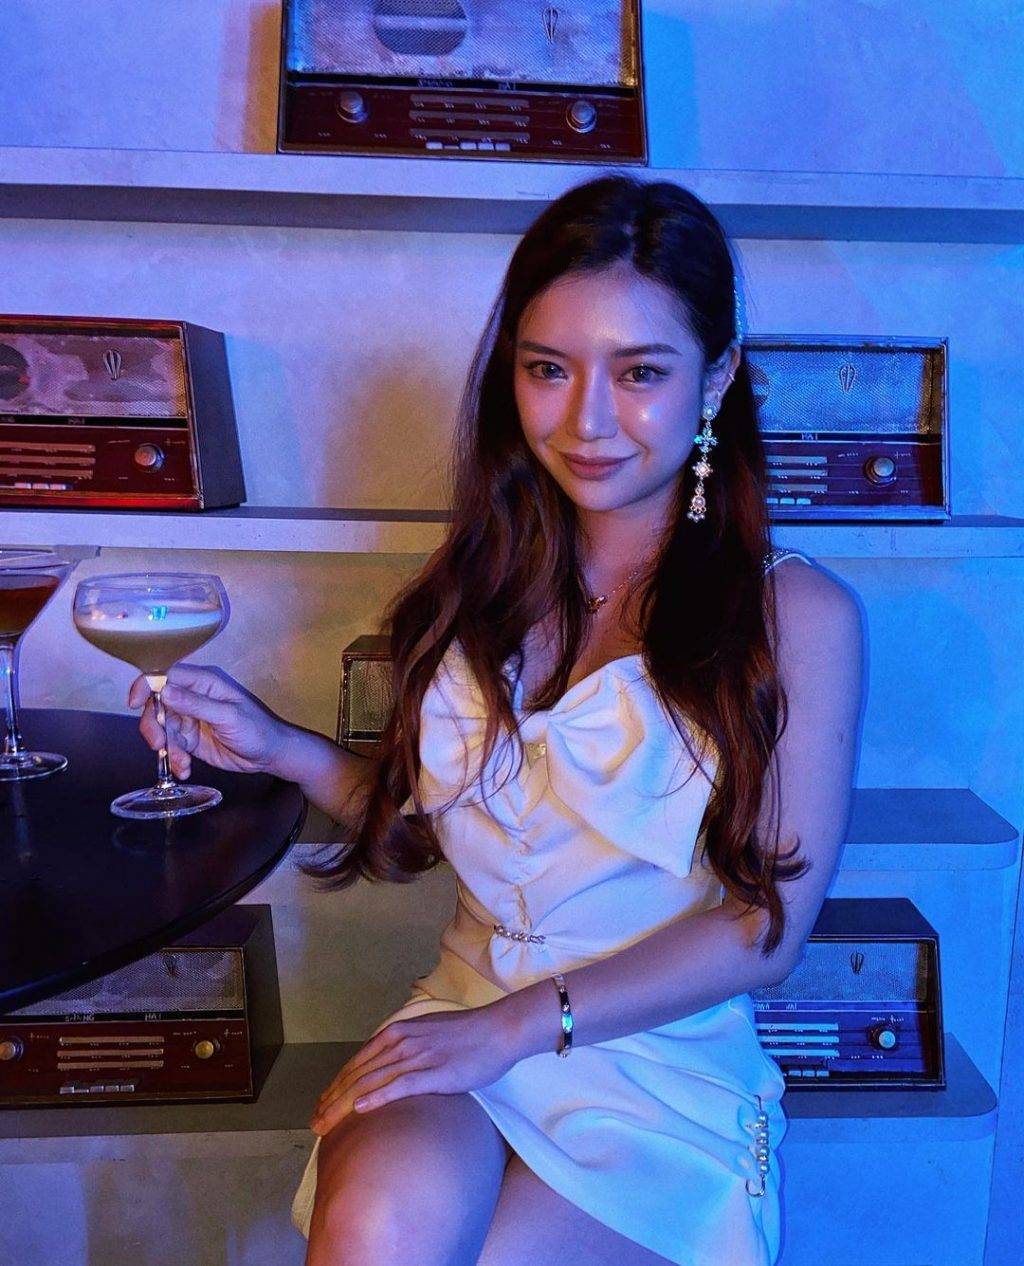 新加坡創意主題酒吧🍻 下班後來幹一杯！精致高雅、高空酒吧、動感電玩、火車主題都在這裏👀